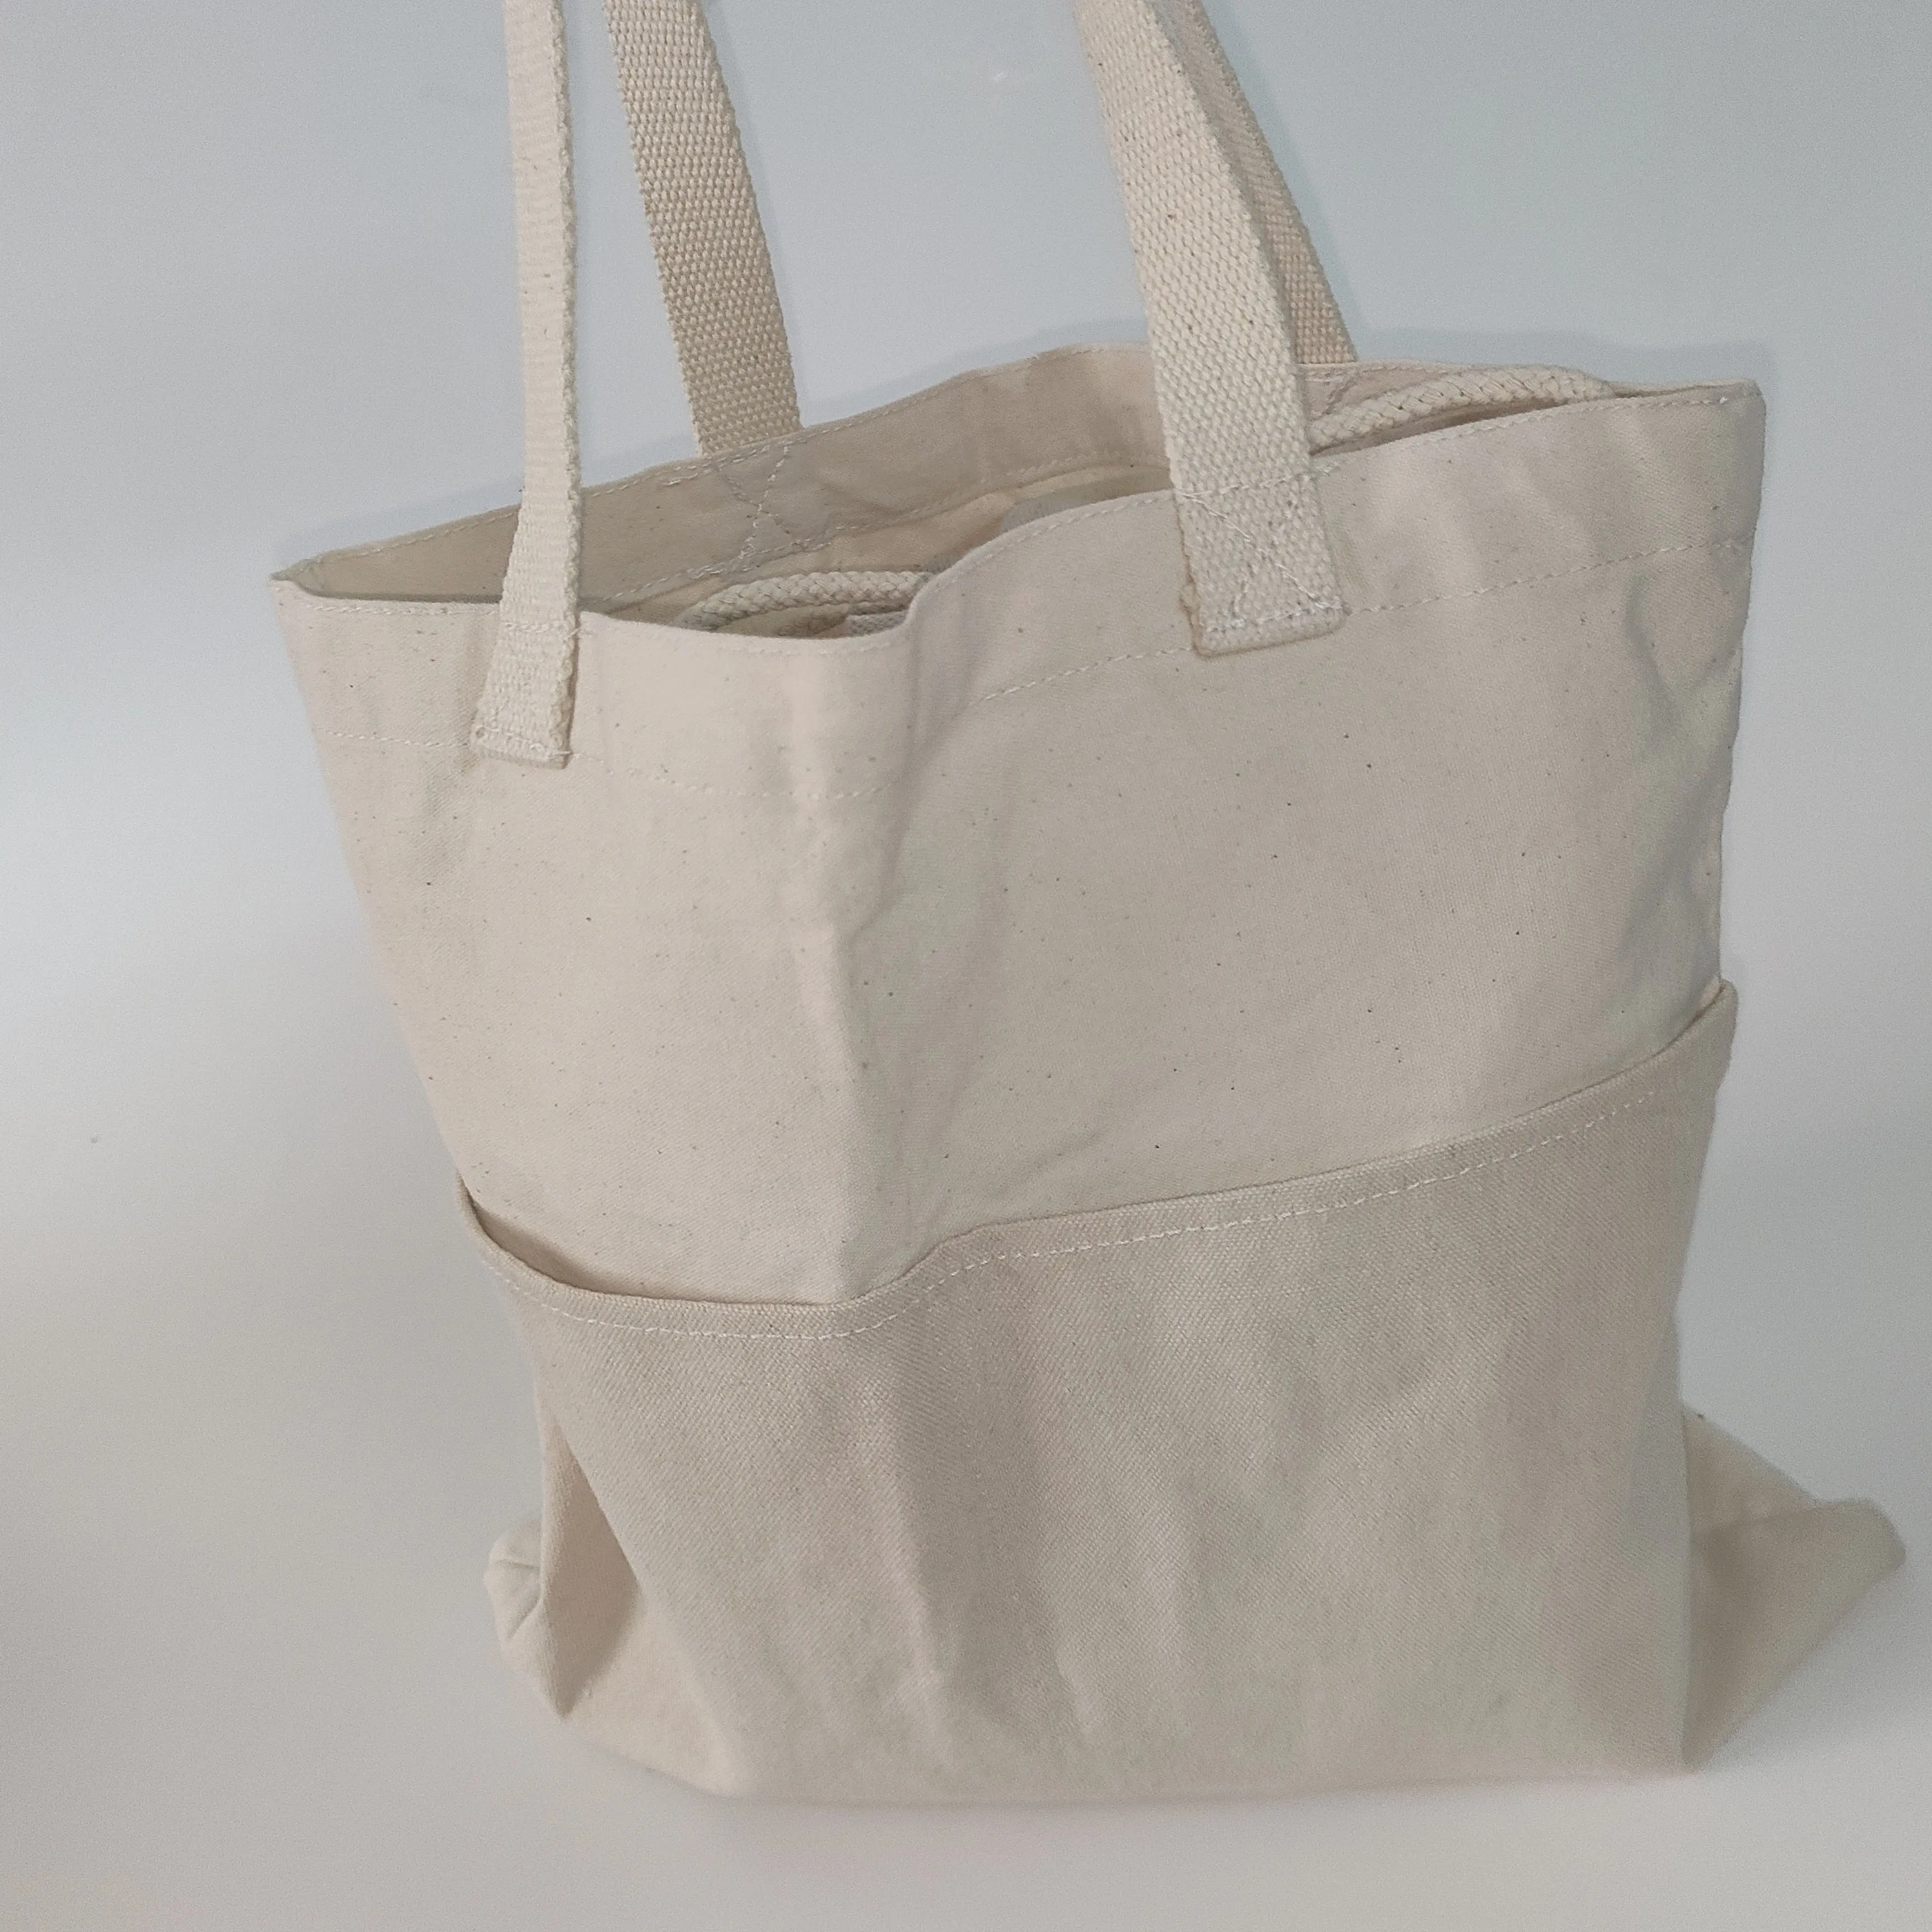 कस्टम लोगो मुद्रित कॉटन कैनवास बैग प्राकृतिक टोट किराना शॉपिंग बैग